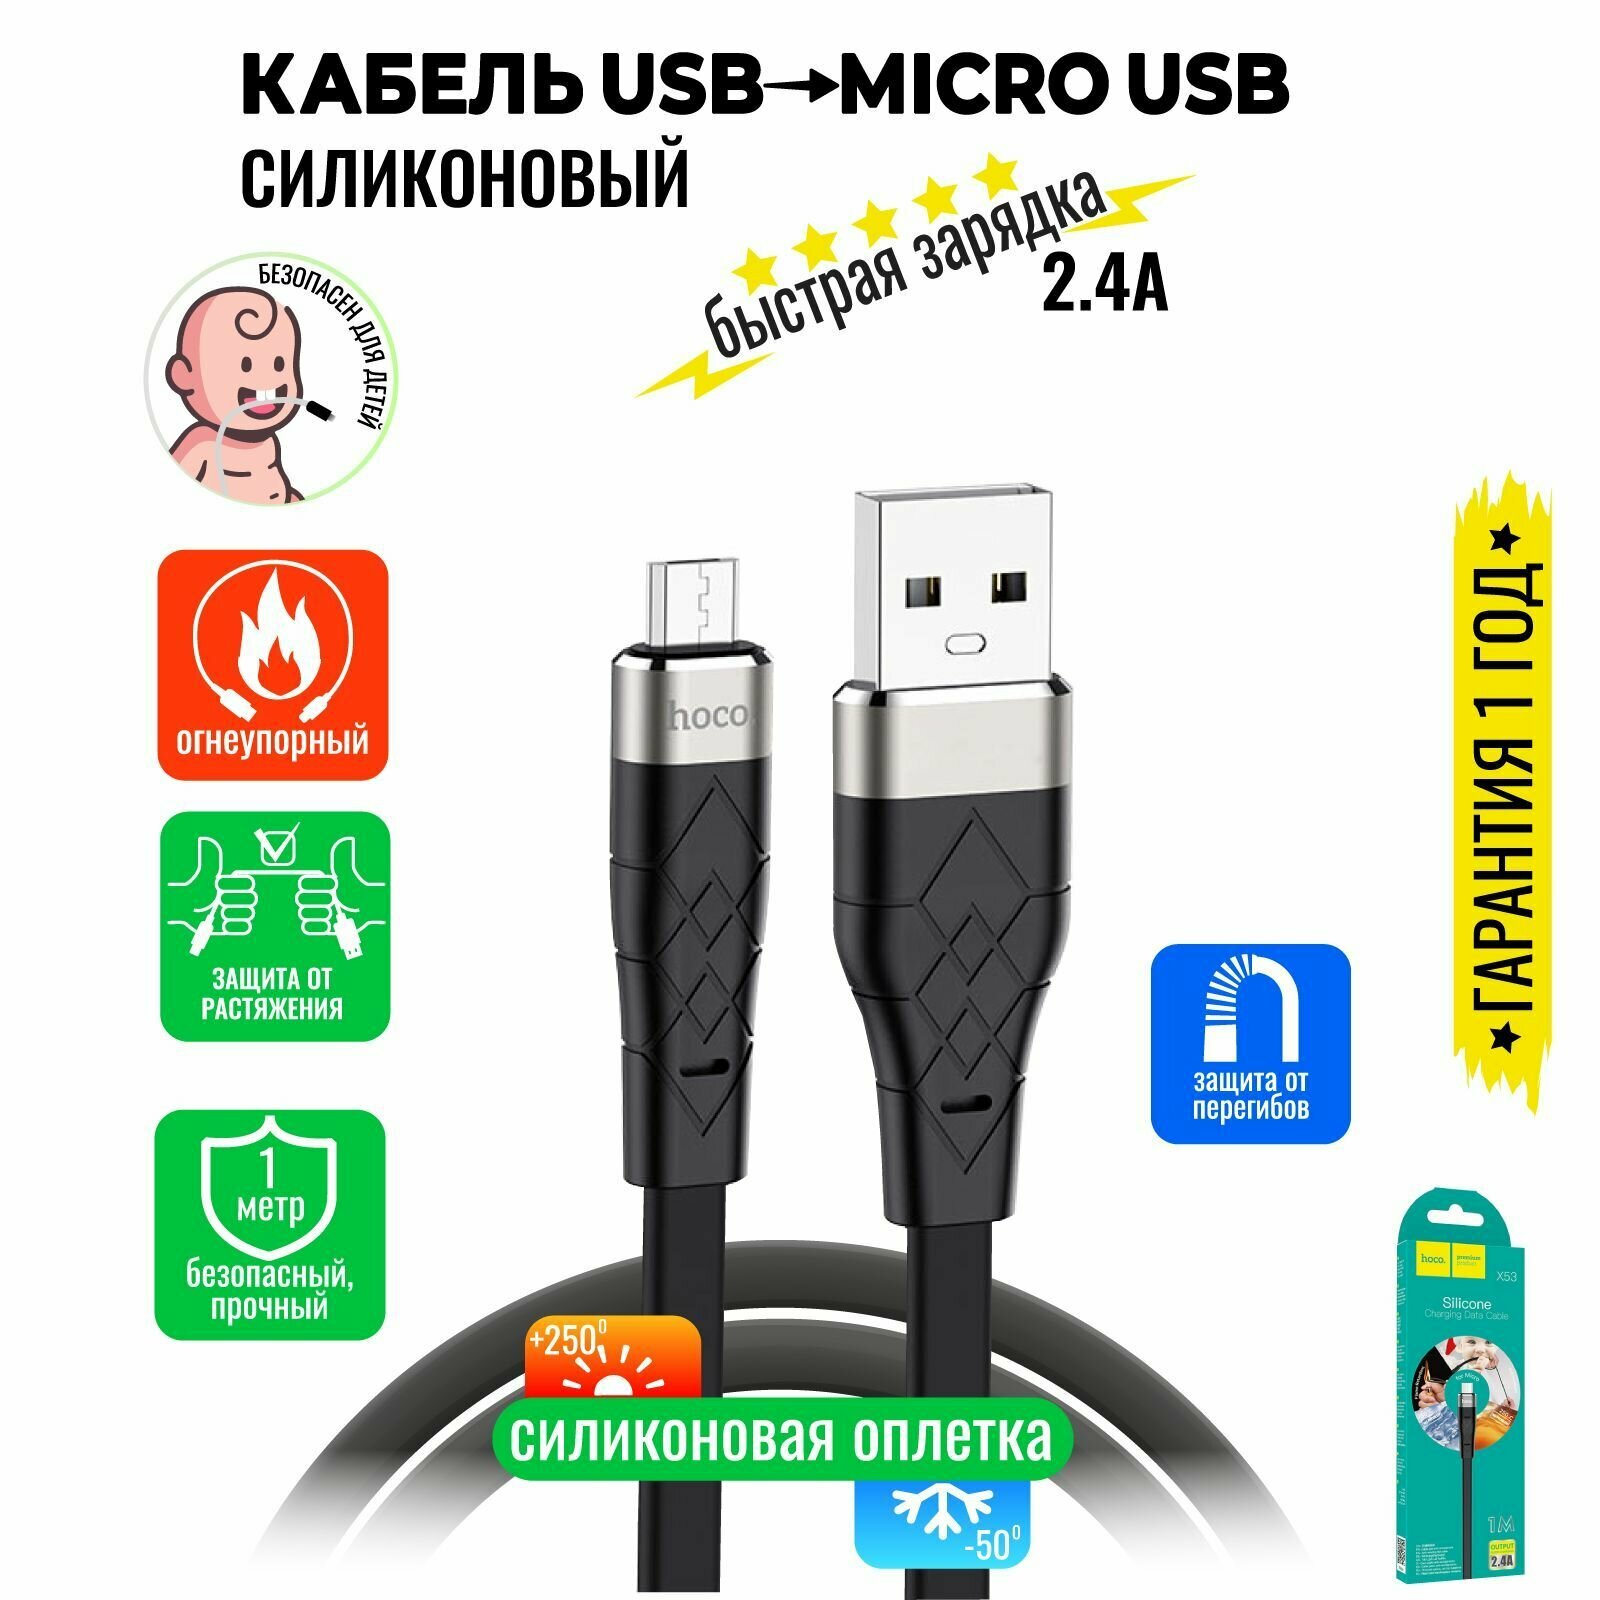 Кабель Micro USB, быстрая зарядка, 1 метр, силиконовый, передача данных / шнур для телефона микро юсб для Android / Провод для андройд / Hoco. X53